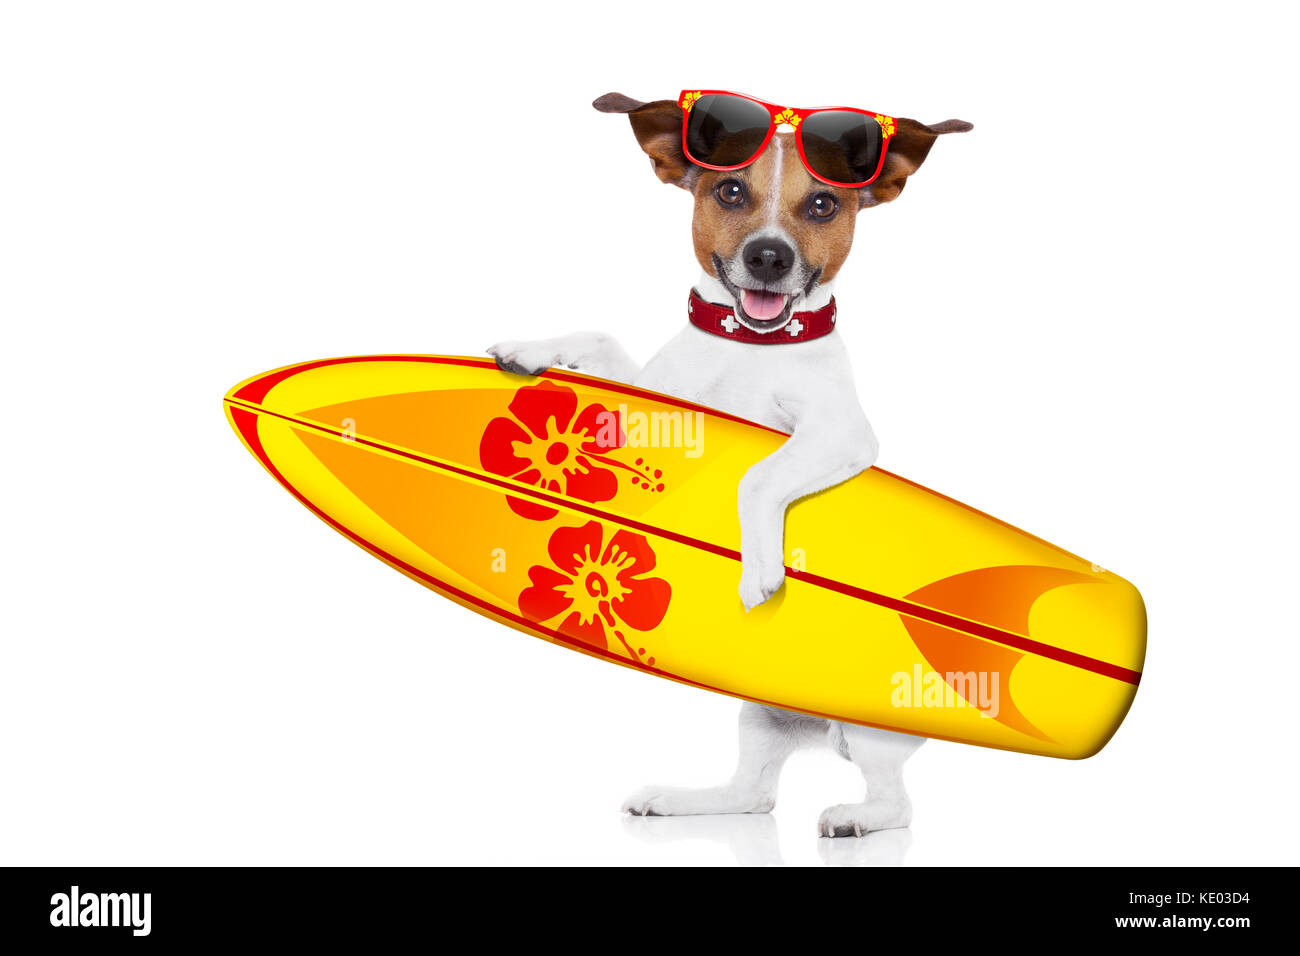 Perro surf Imágenes recortadas de stock - Alamy